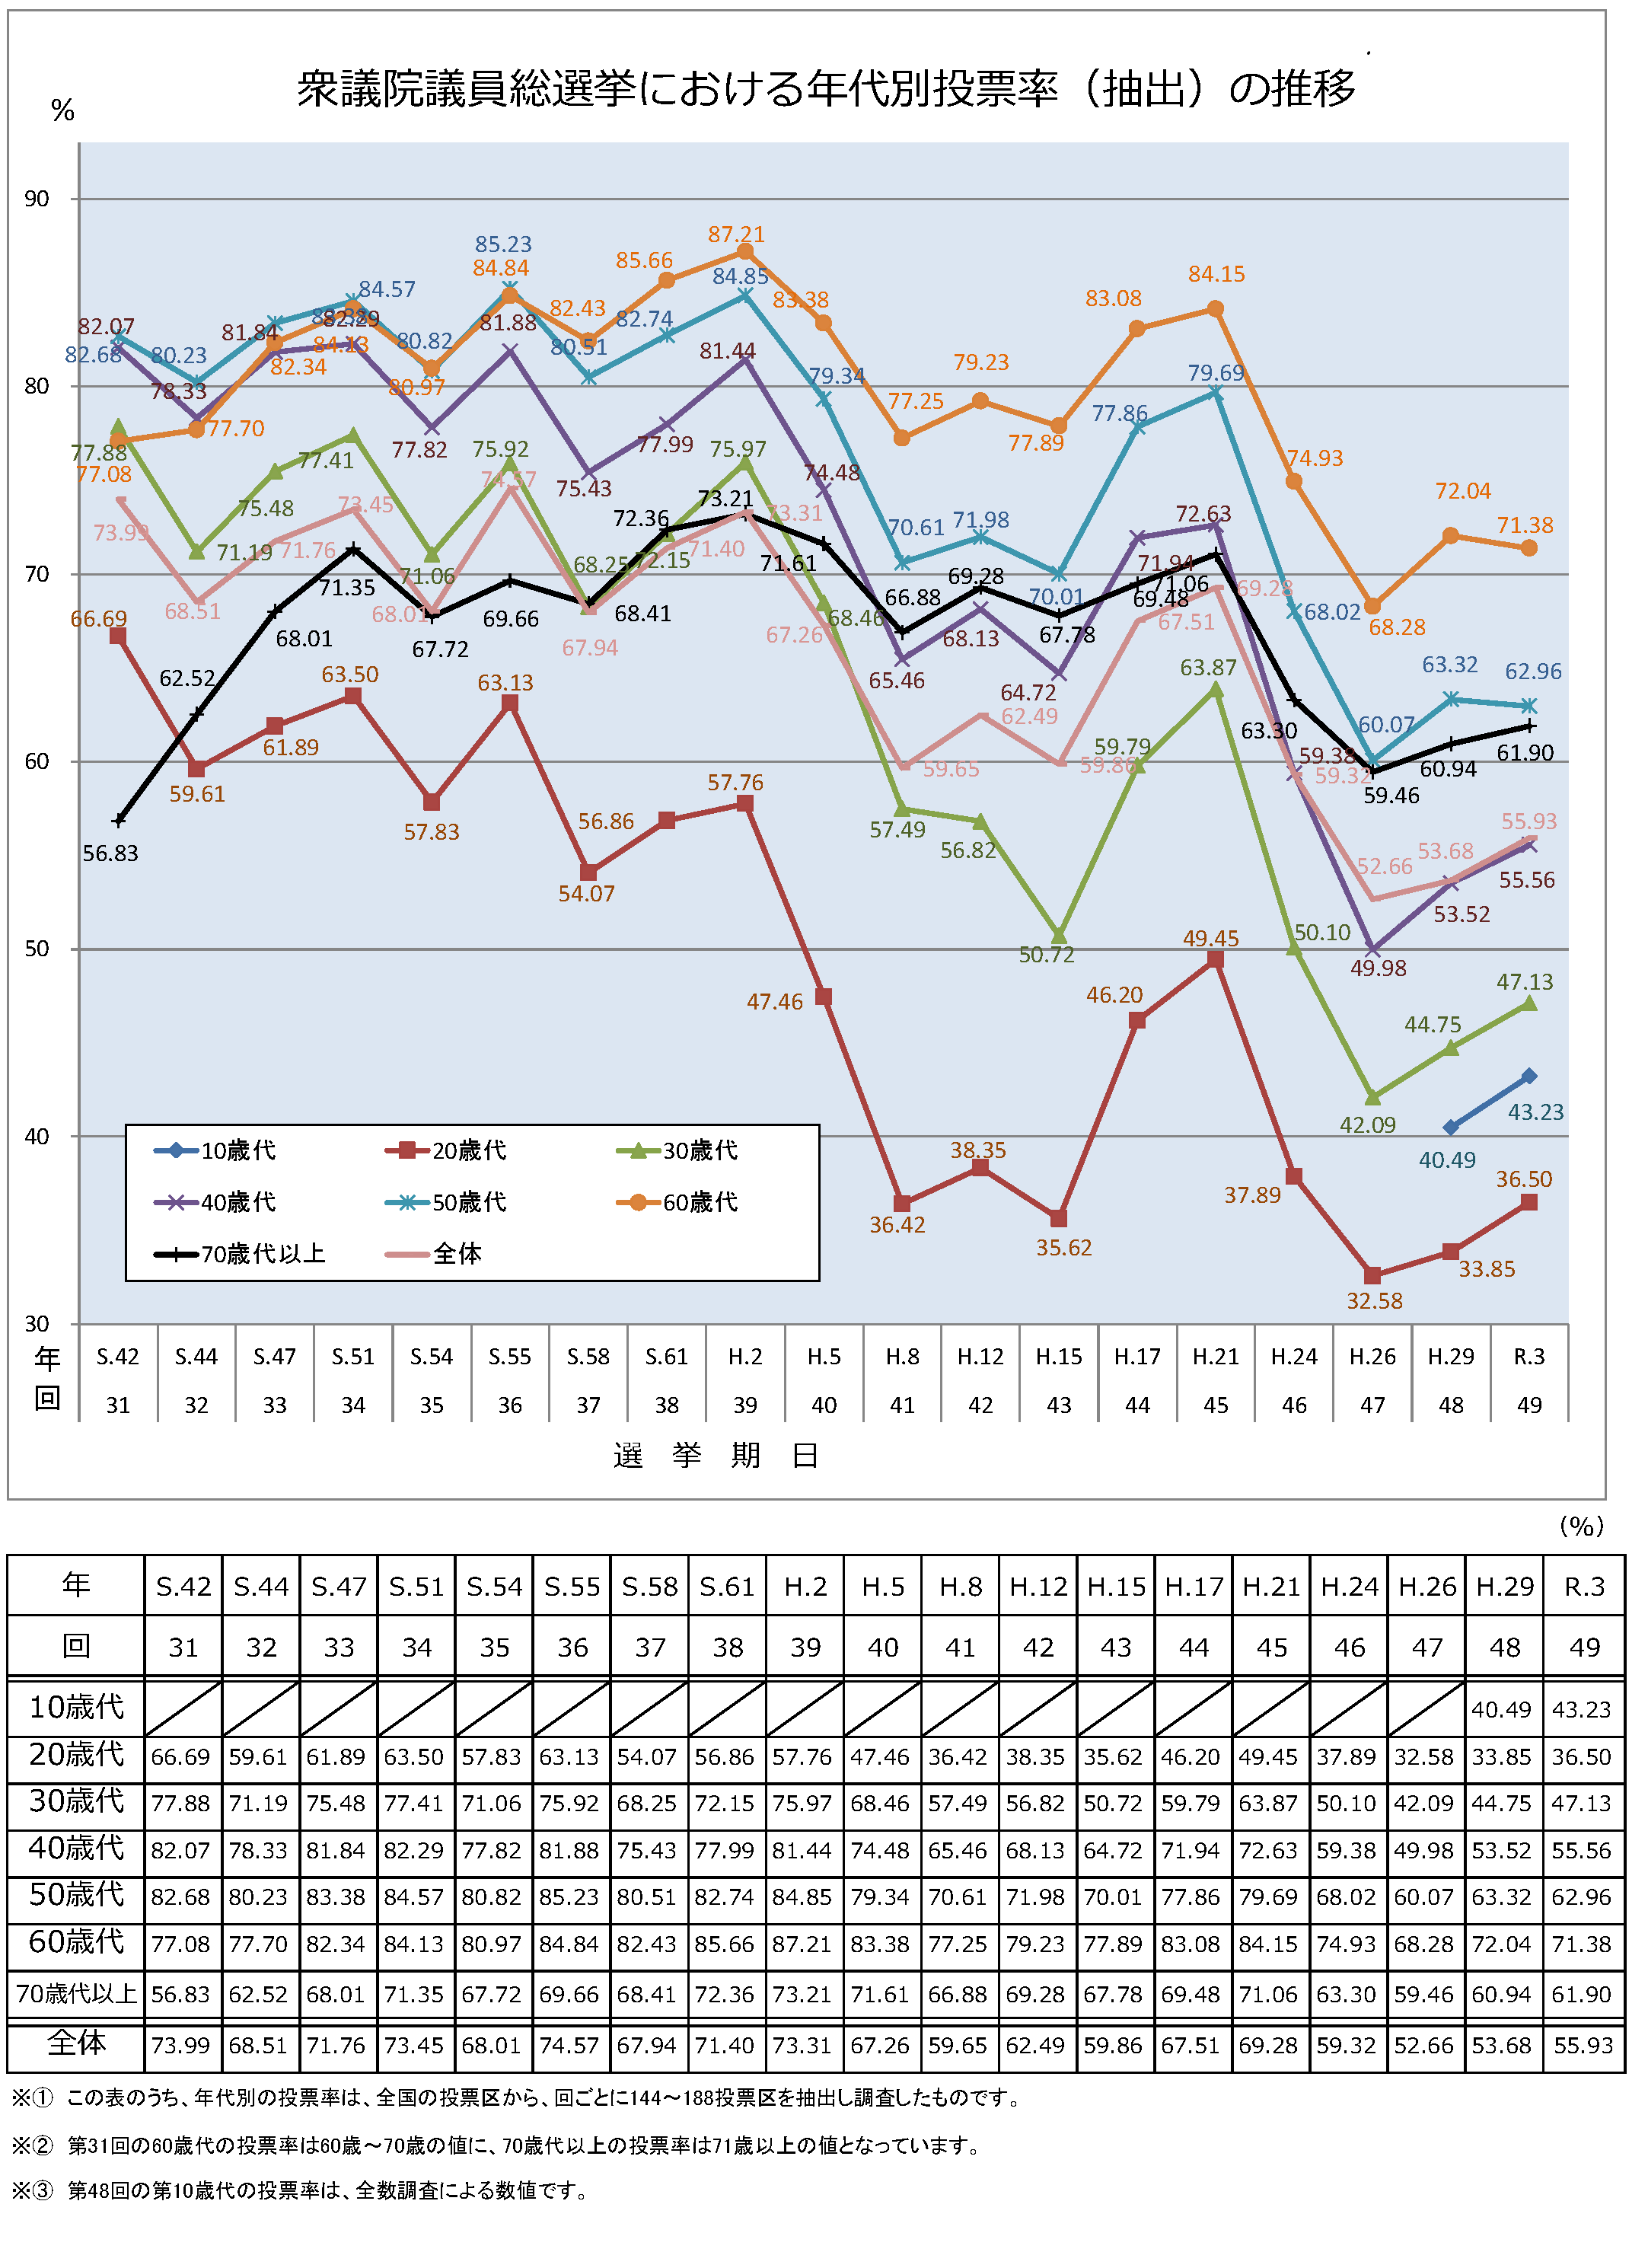 衆議院議員総選挙における年代別投票率の推移のグラフ　詳細はPDFを参照